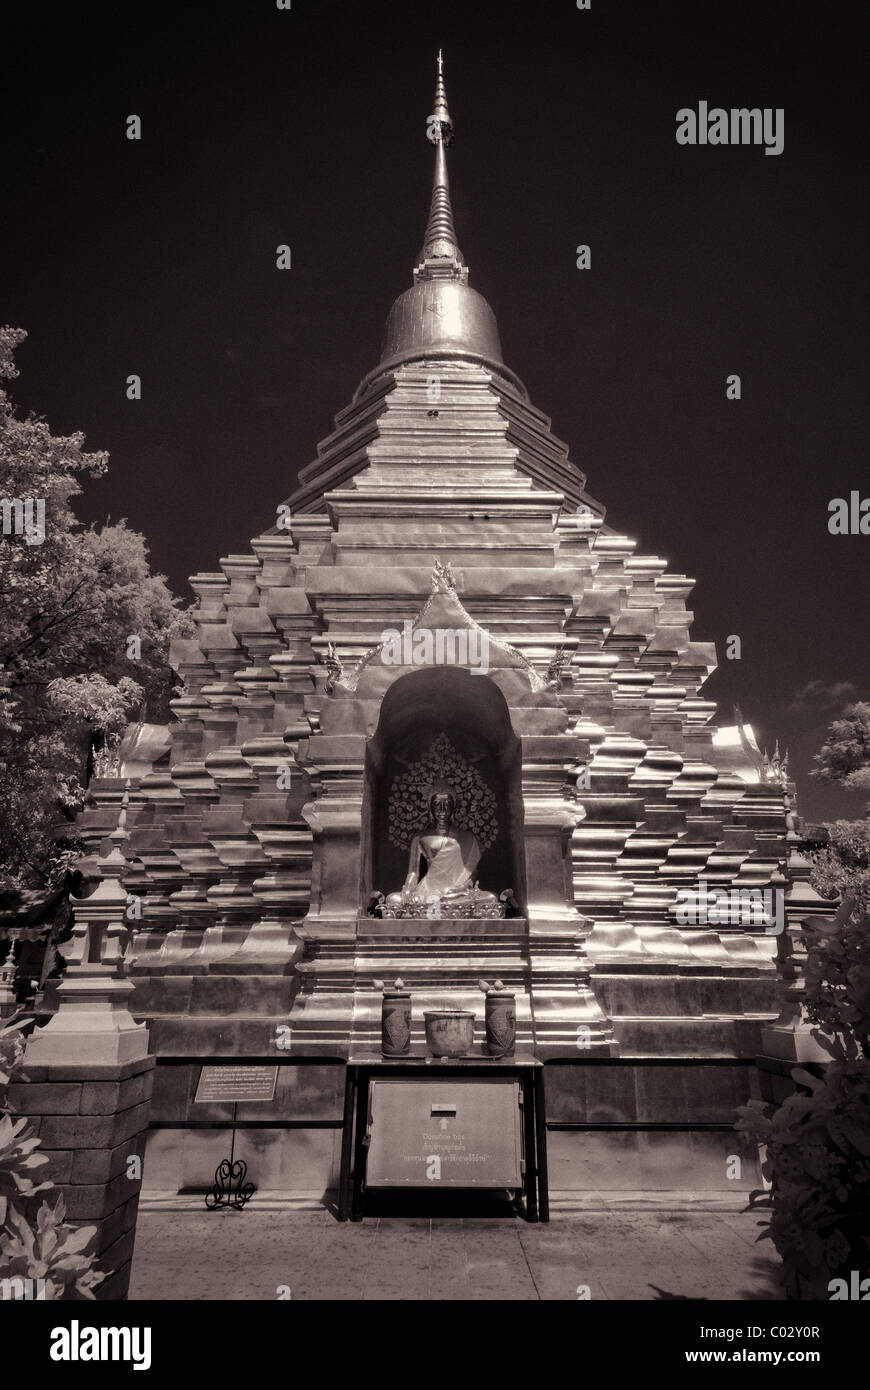 Wat Phan An - Chiang Mai Stock Photo